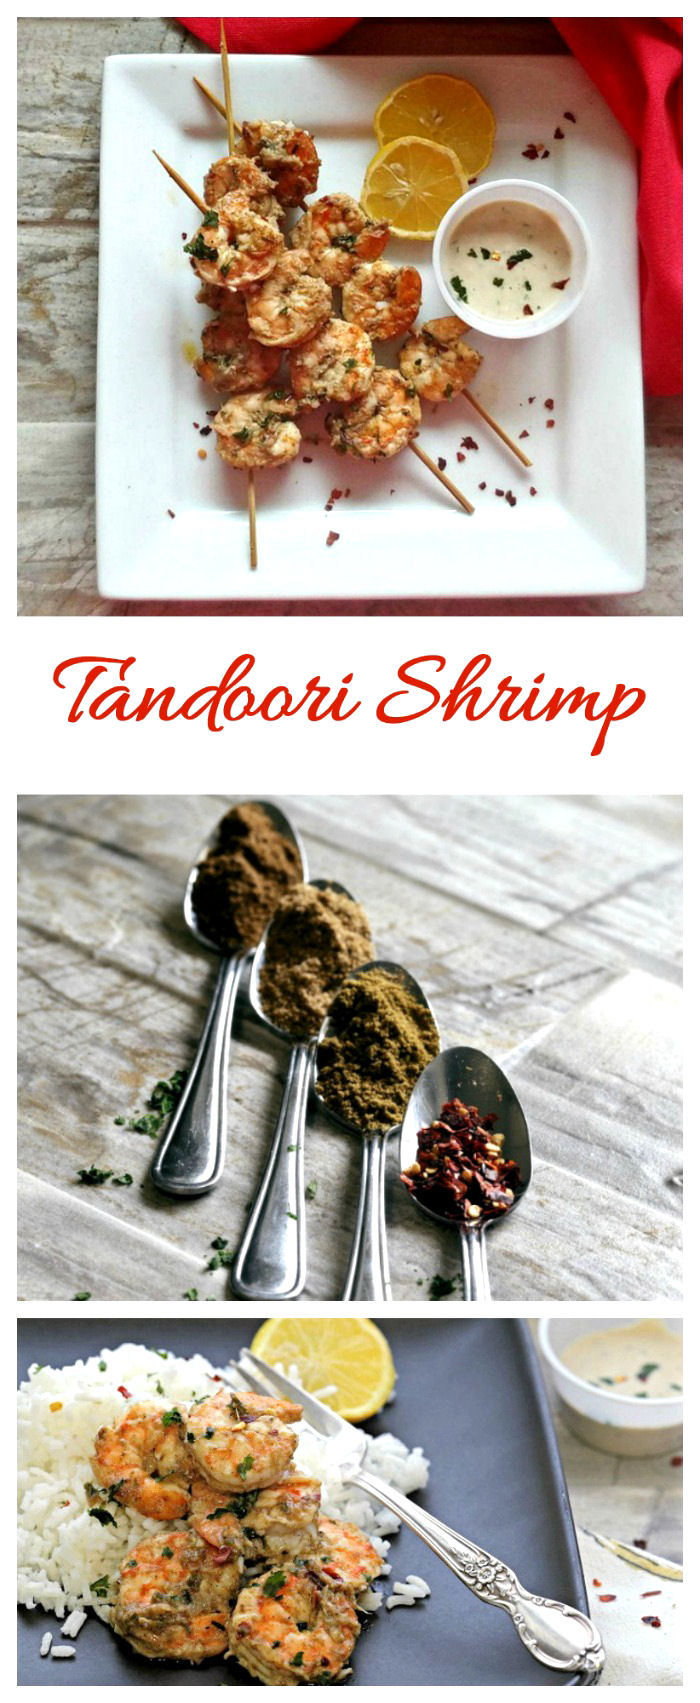 Karkaleca Tandoori me erëza indiane – Recetë e thjeshtë e shijshme (pa gluten – Whole30 – Paleo)